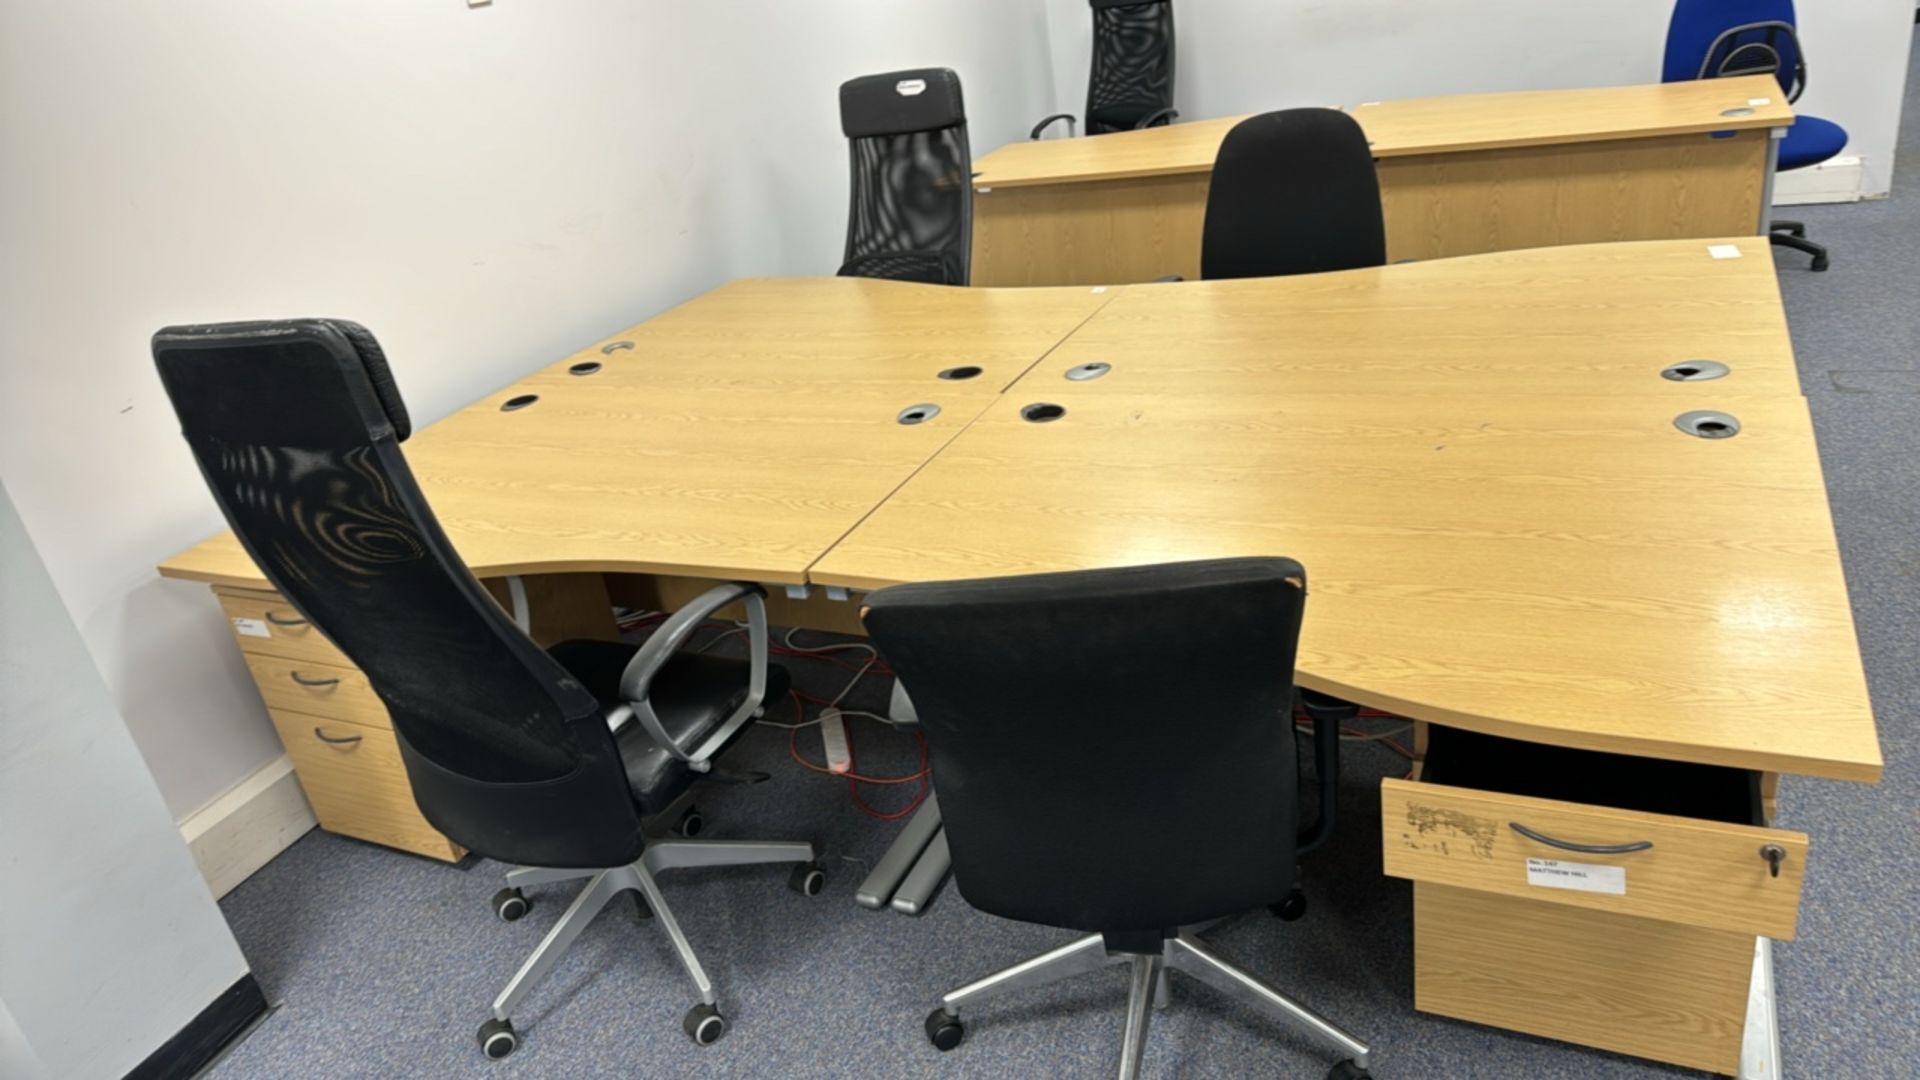 Wooden Effect Office Desks x4 With Office Chairs x4 - Bild 2 aus 3